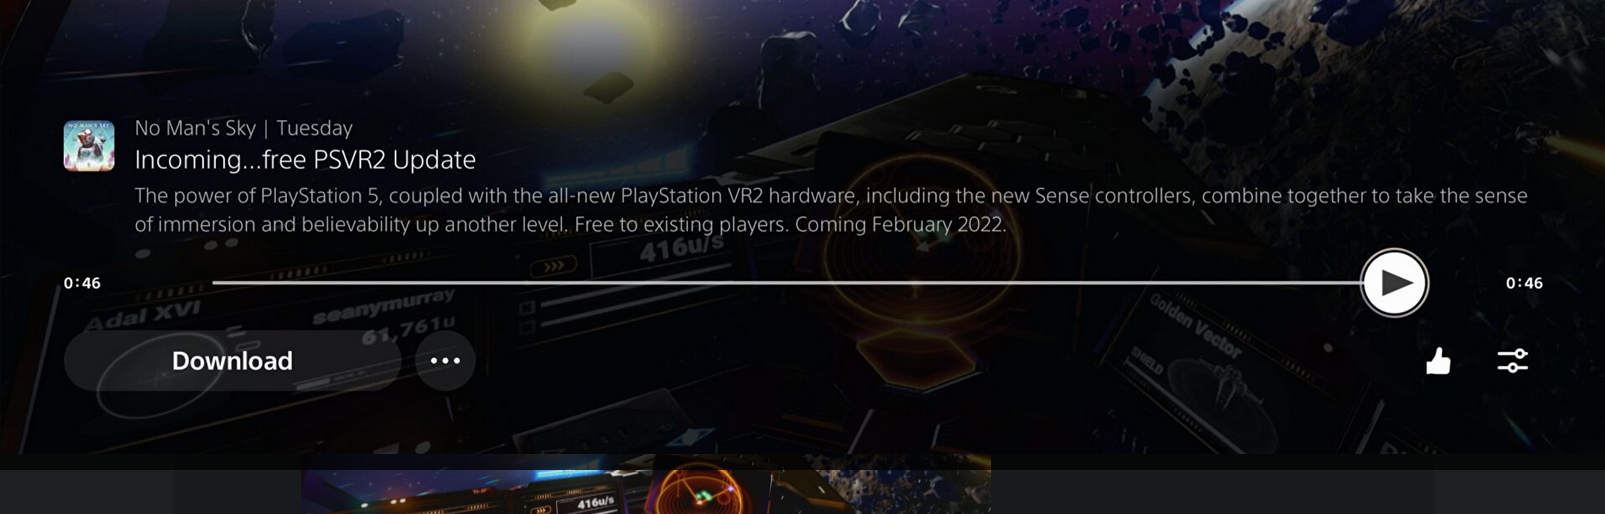 《无人深空》免费PSVR 2更新将于明年硬件首发同步推出 3%title%